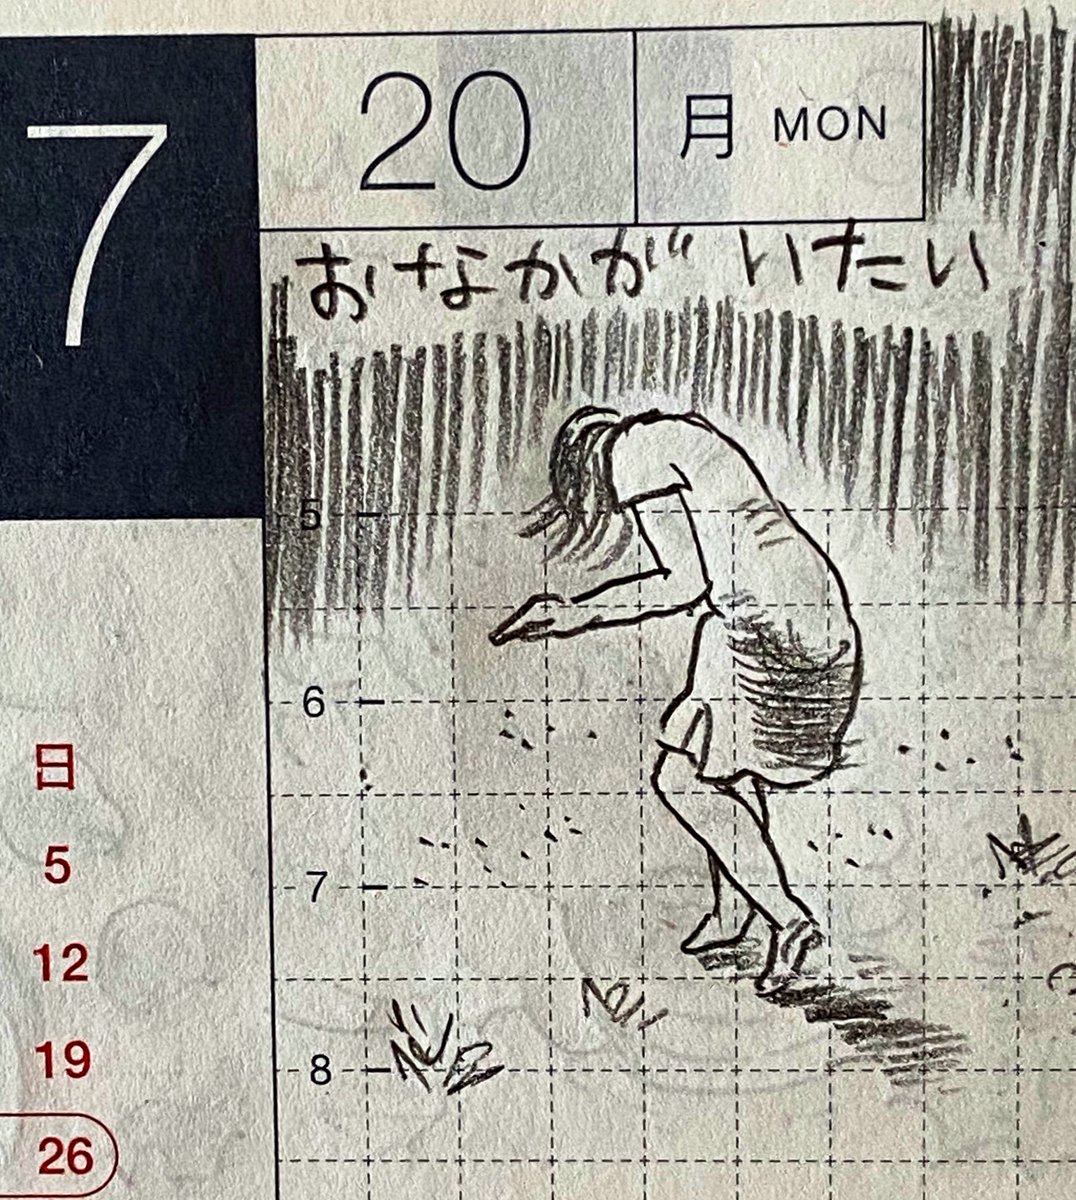 7月第4週の一コマ絵日記2/1
滋賀でまた新たなクラスターが発生した週だった
#一コマ絵日記
#ほぼ日 